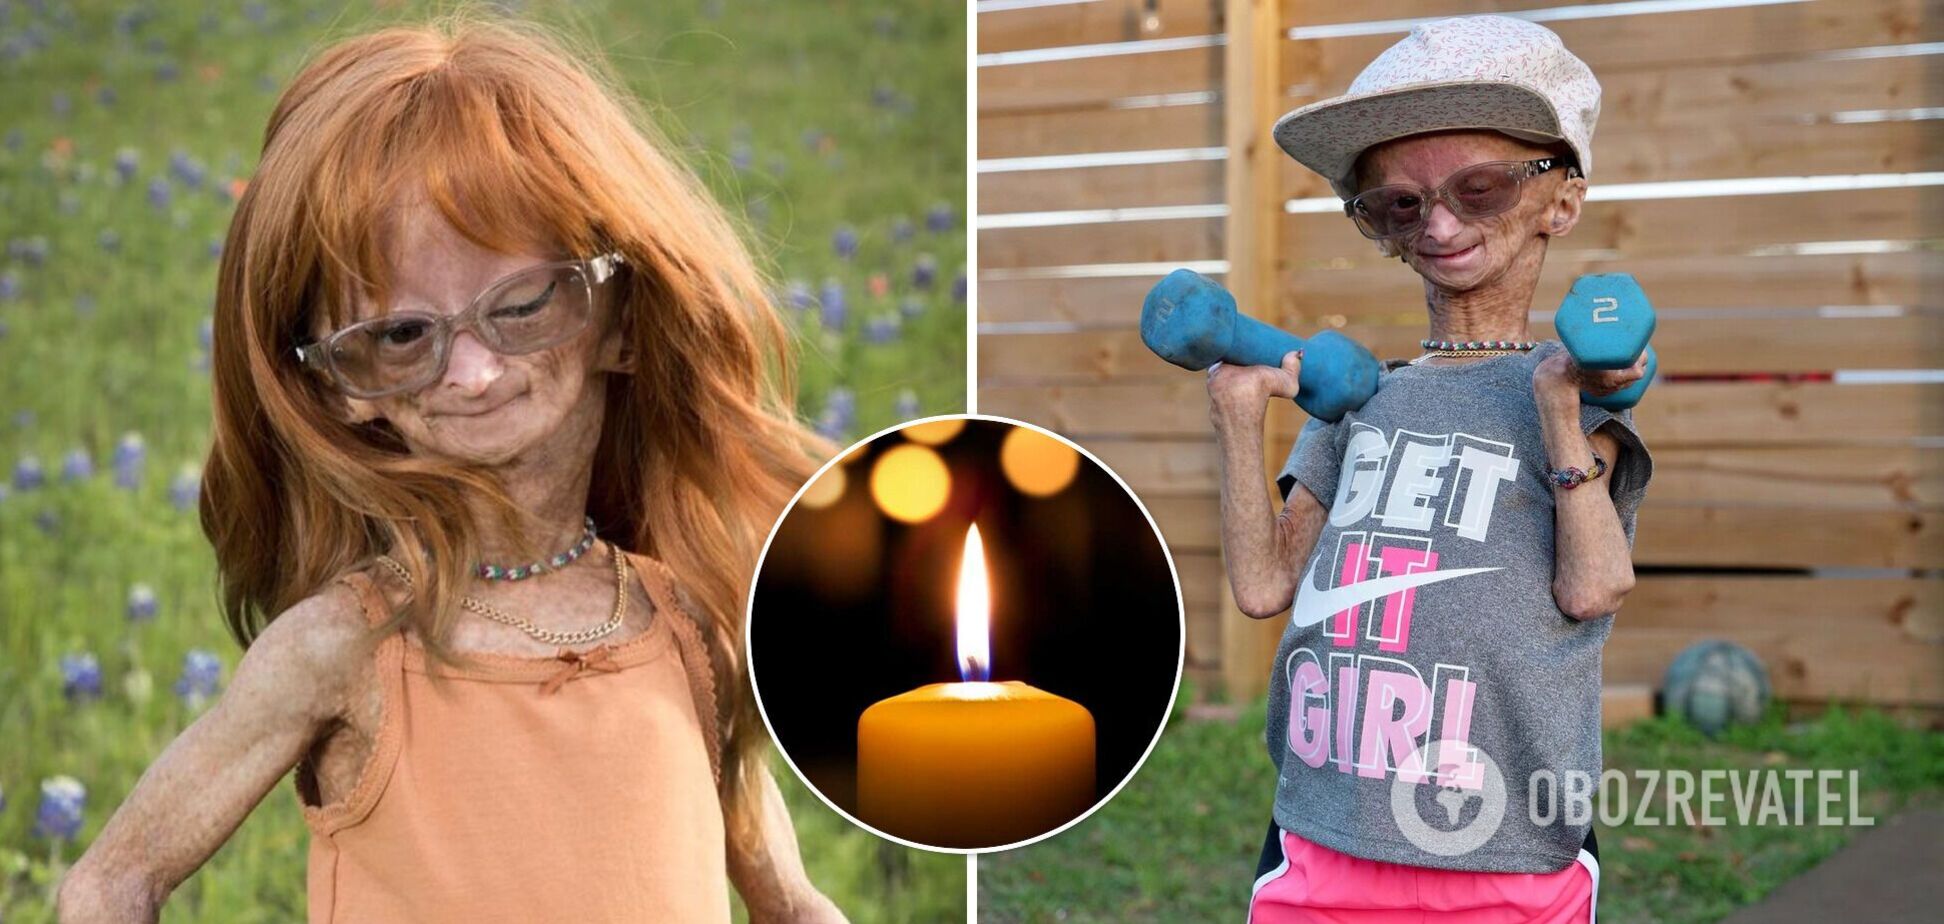 Померла 15-річна дівчинка та зірка YouTube з обличчям 'бабусі'